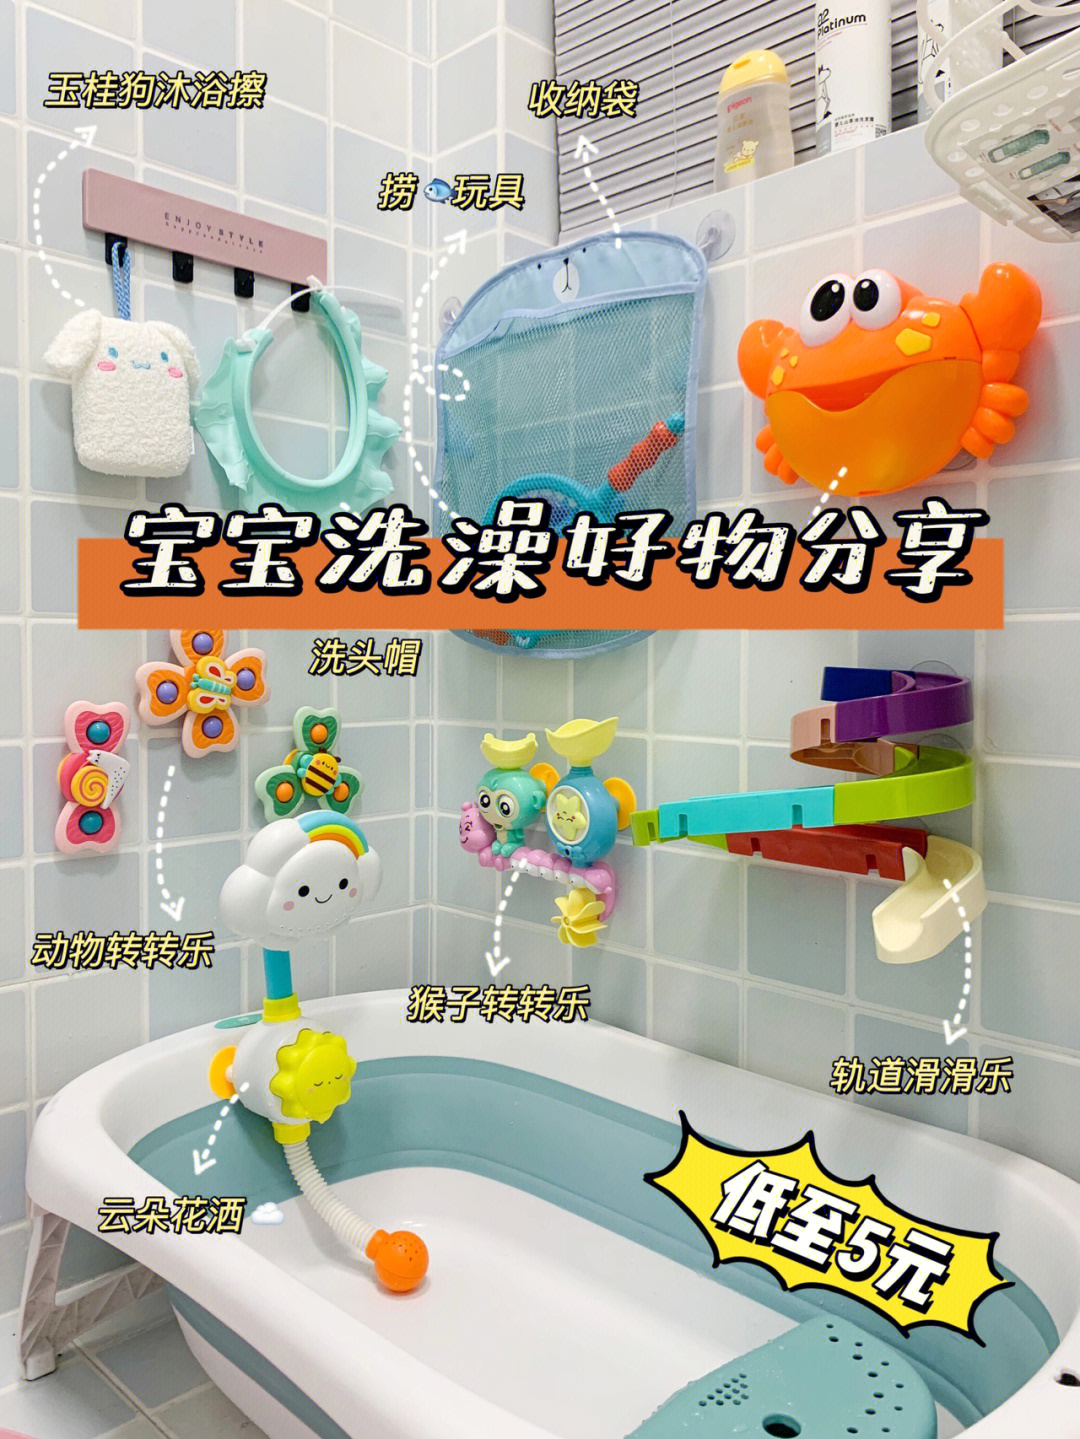 鳄鱼爱洗澡中文版游戏_鳄鱼小顽皮爱洗澡游戏_关于洗澡的游戏